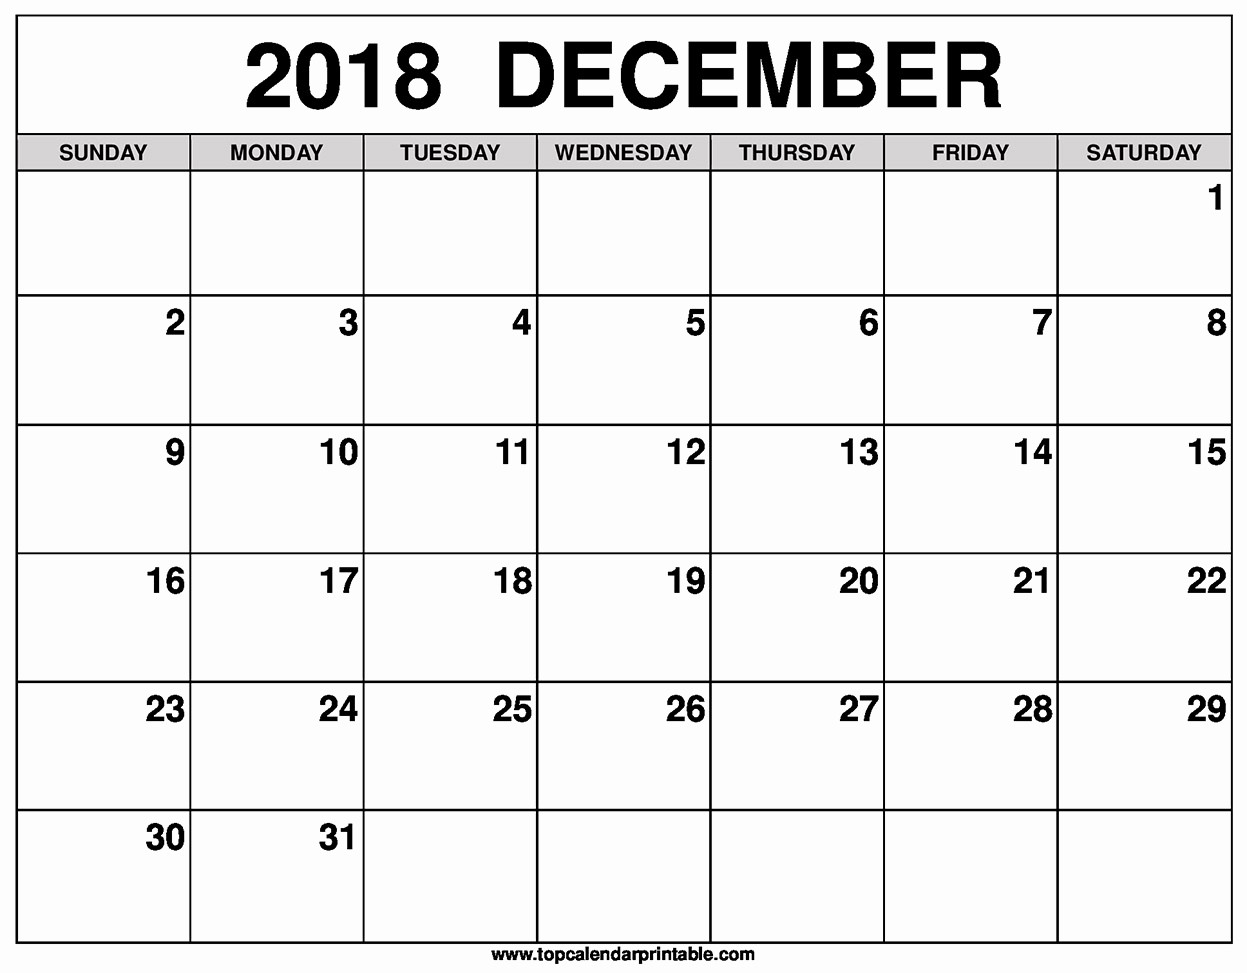 Blank Calendar Template December 2018 Beautiful December 2018 Calendar